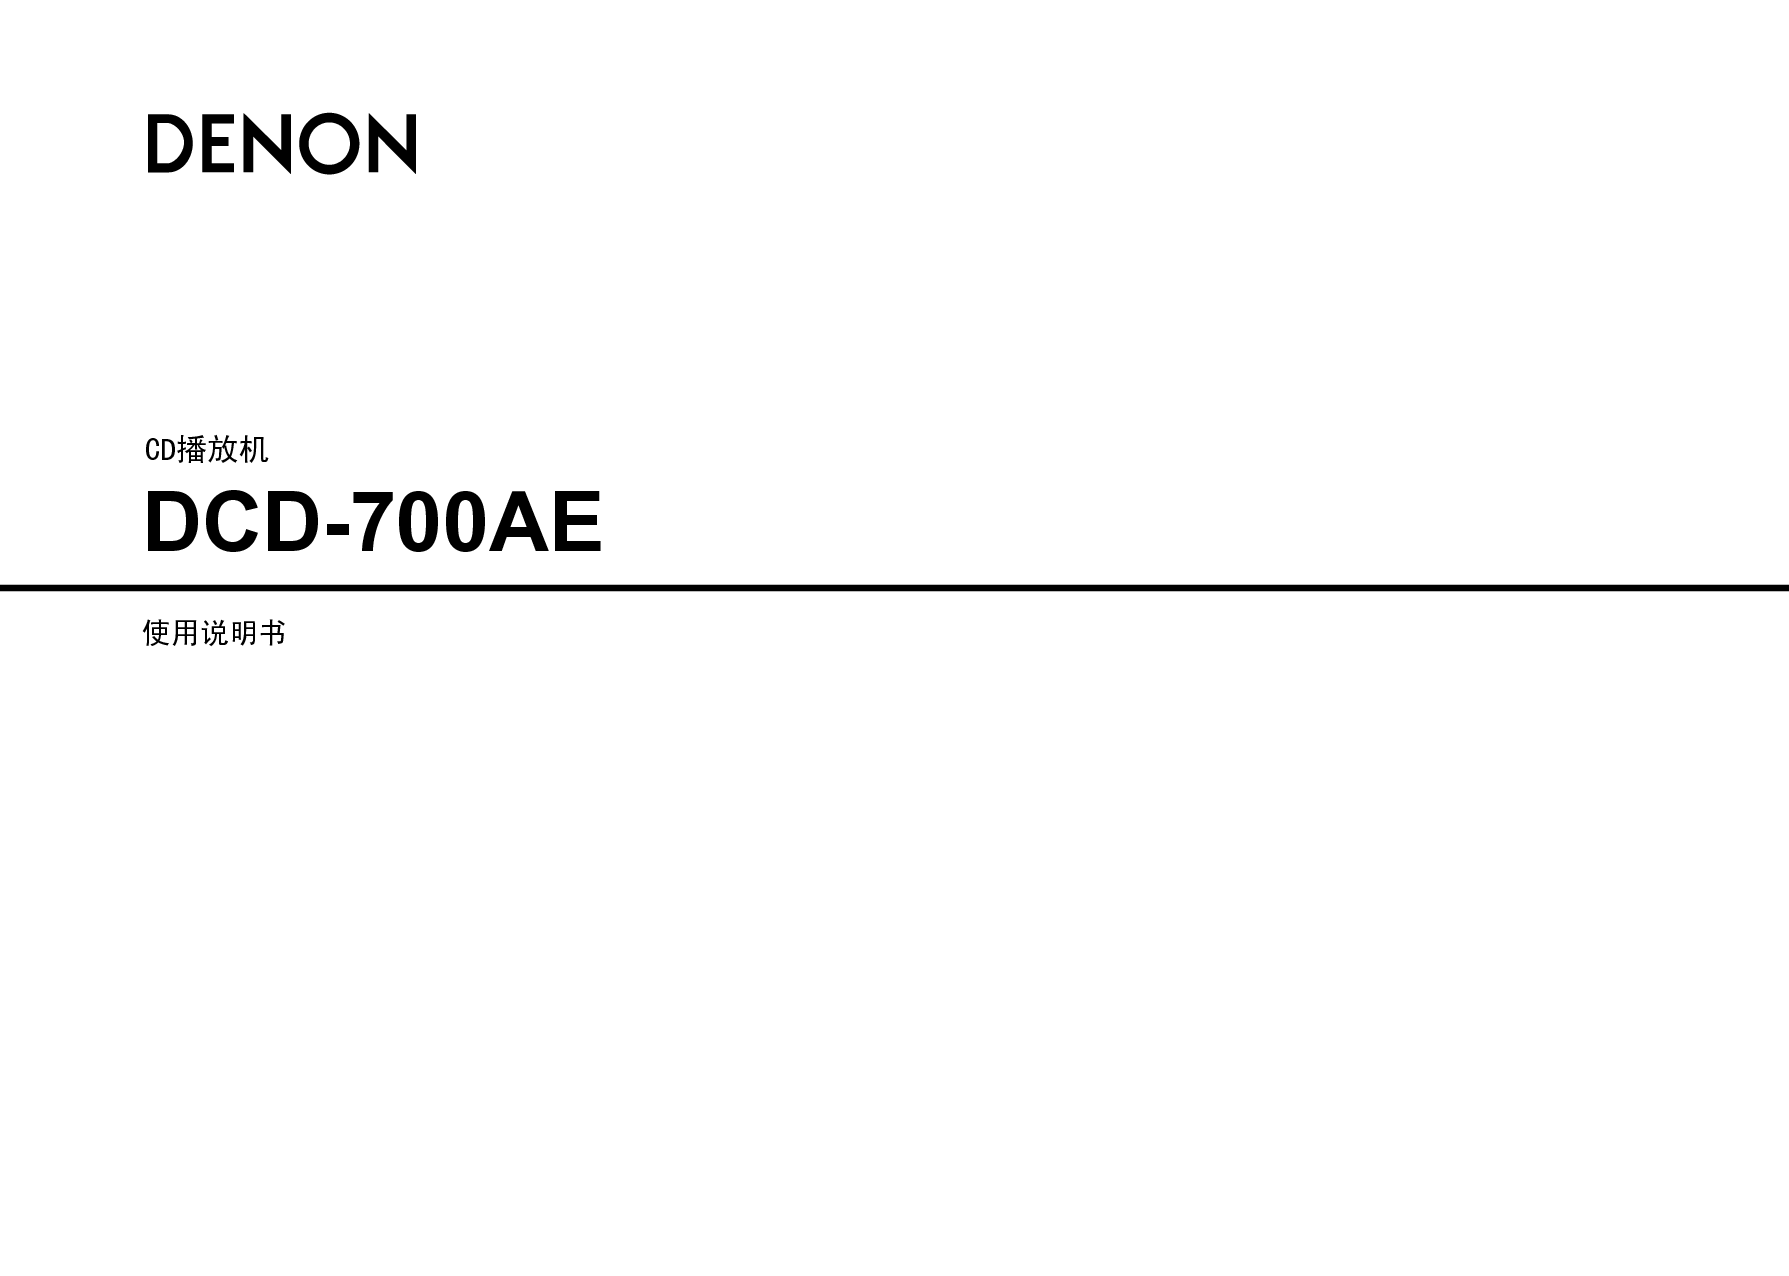 天龙 Denon DCD-700AE 说明书 封面